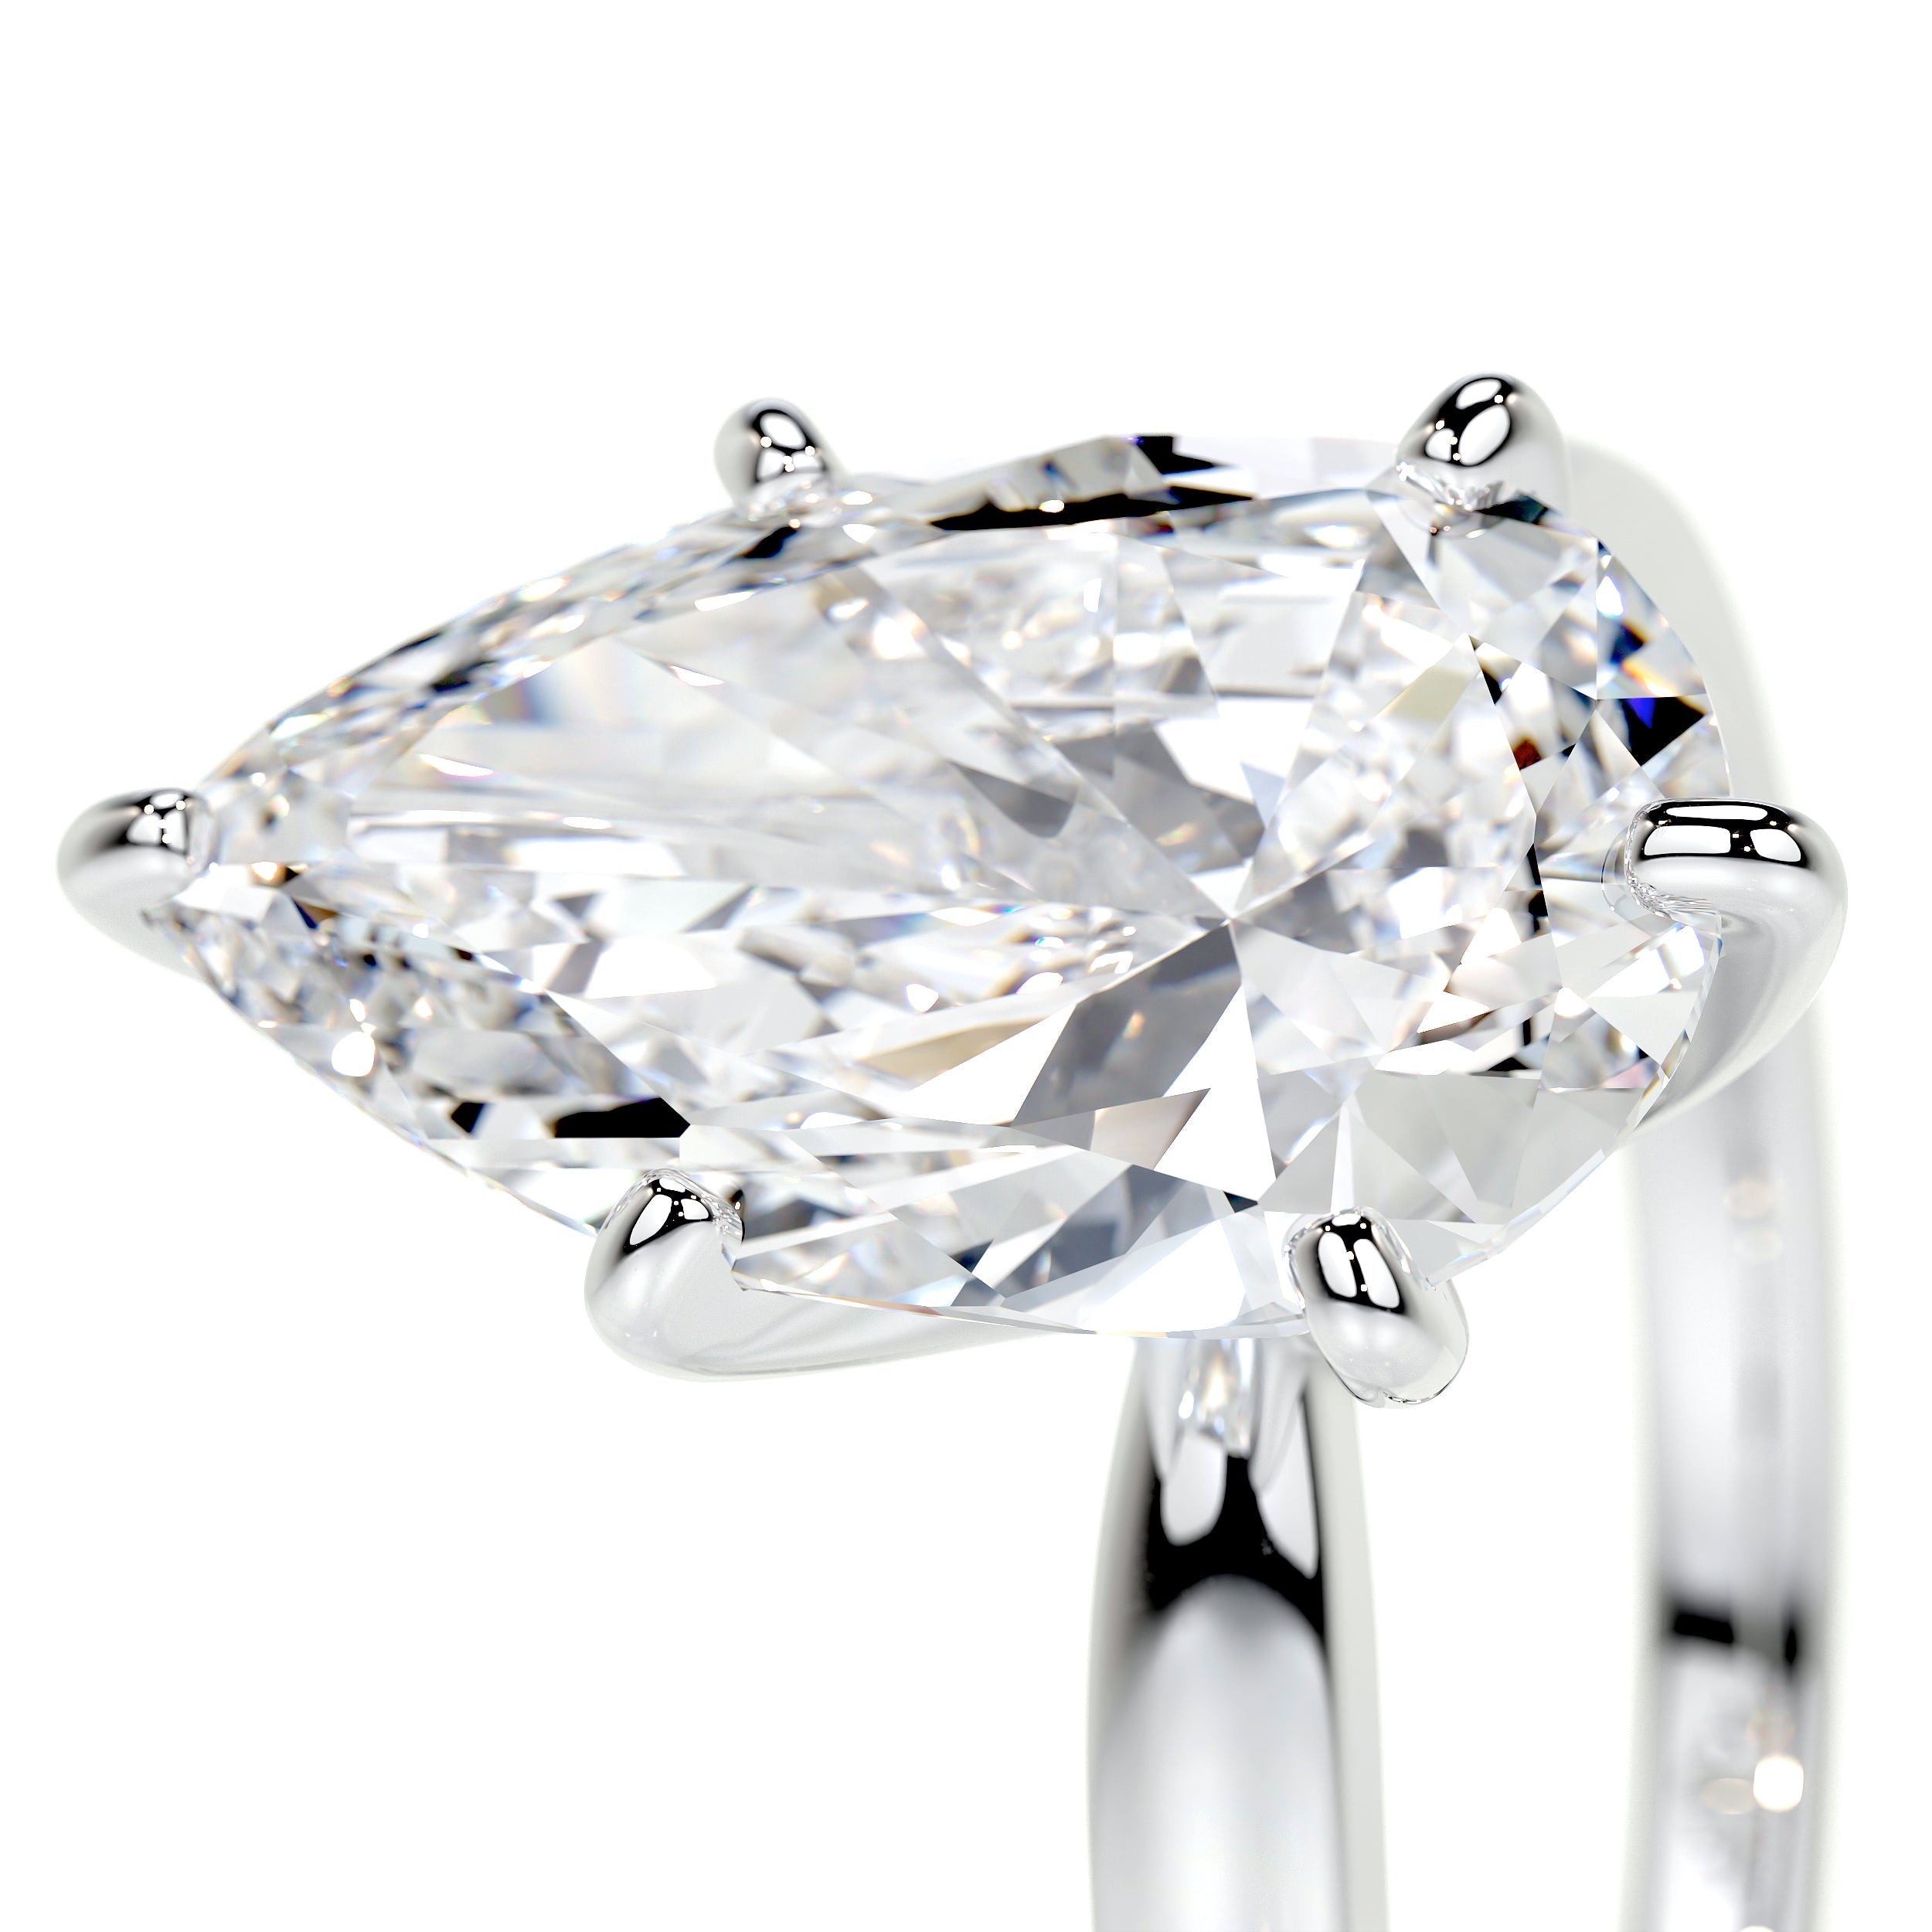 Adaline Lab Grown Diamond Ring   (5 Carat) -14K White Gold